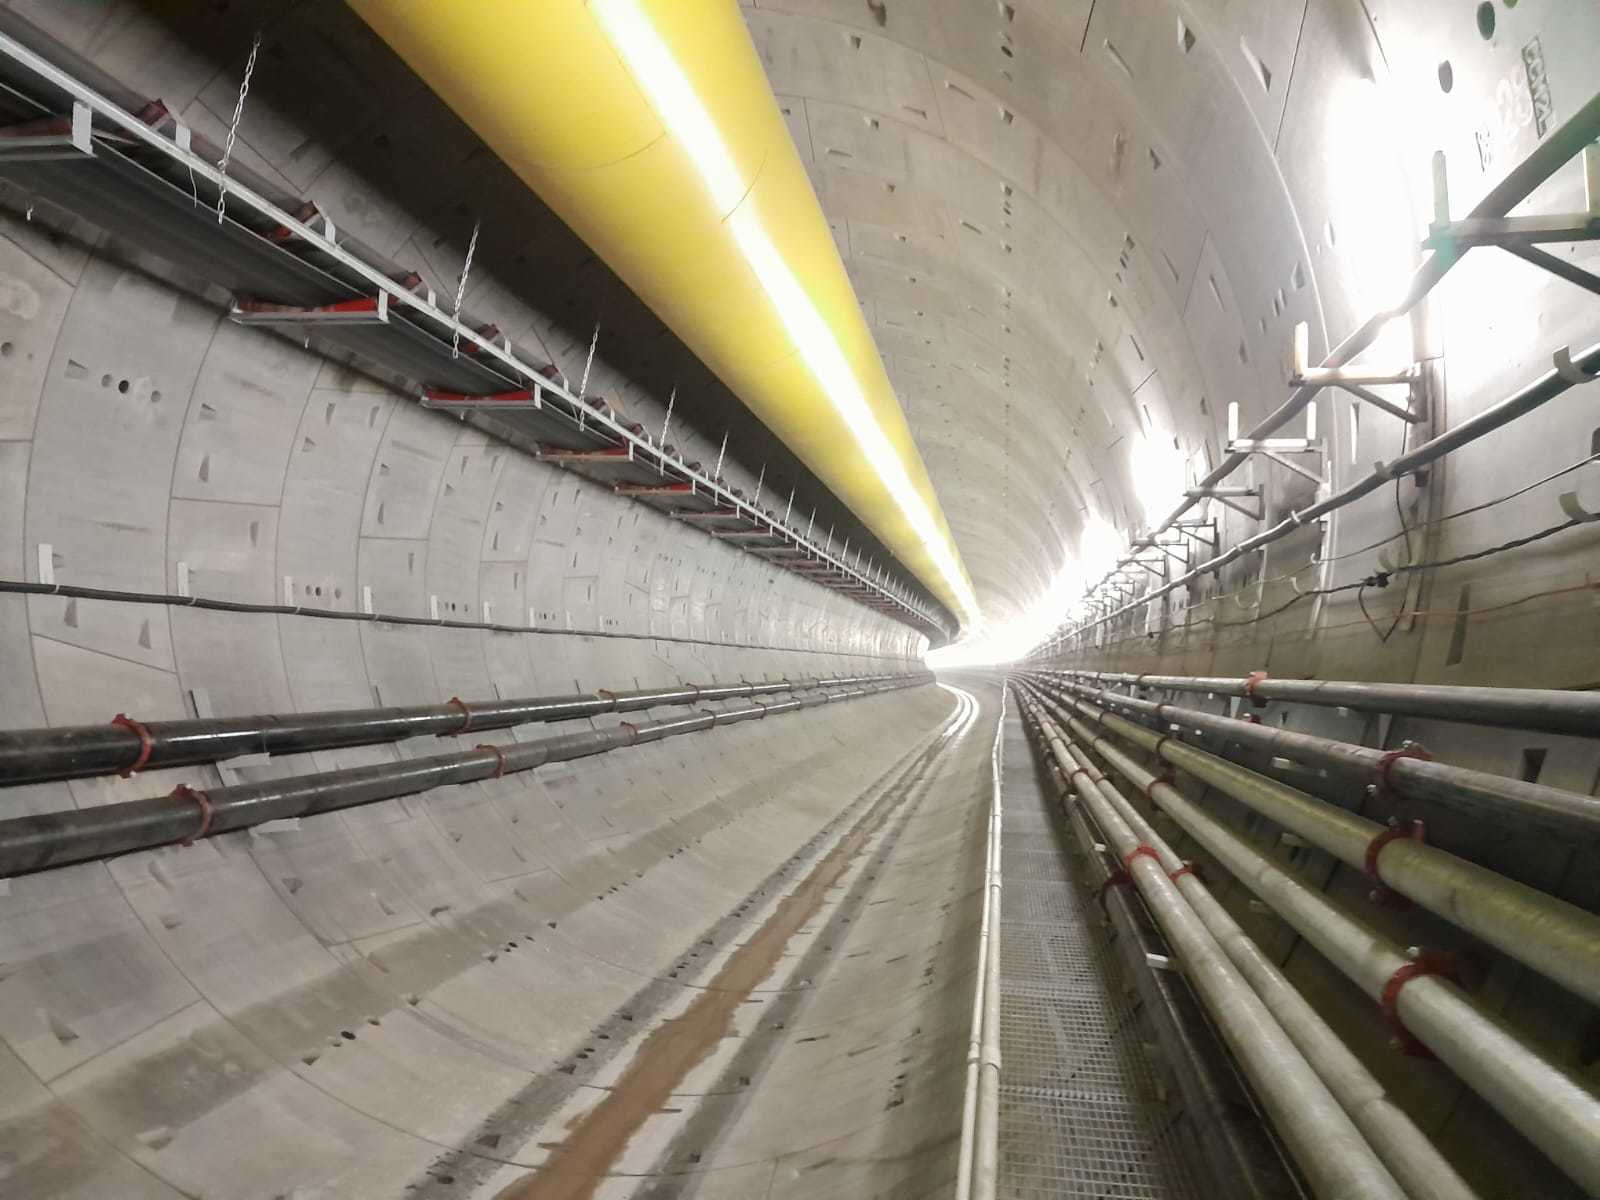 Un túnel que lleva al infinito es lo que deja la TBM luego de su paso… aún con las instalaciones provisorias de trabajo previo al montaje de las vías que llevaran los coches modernos y seguros.